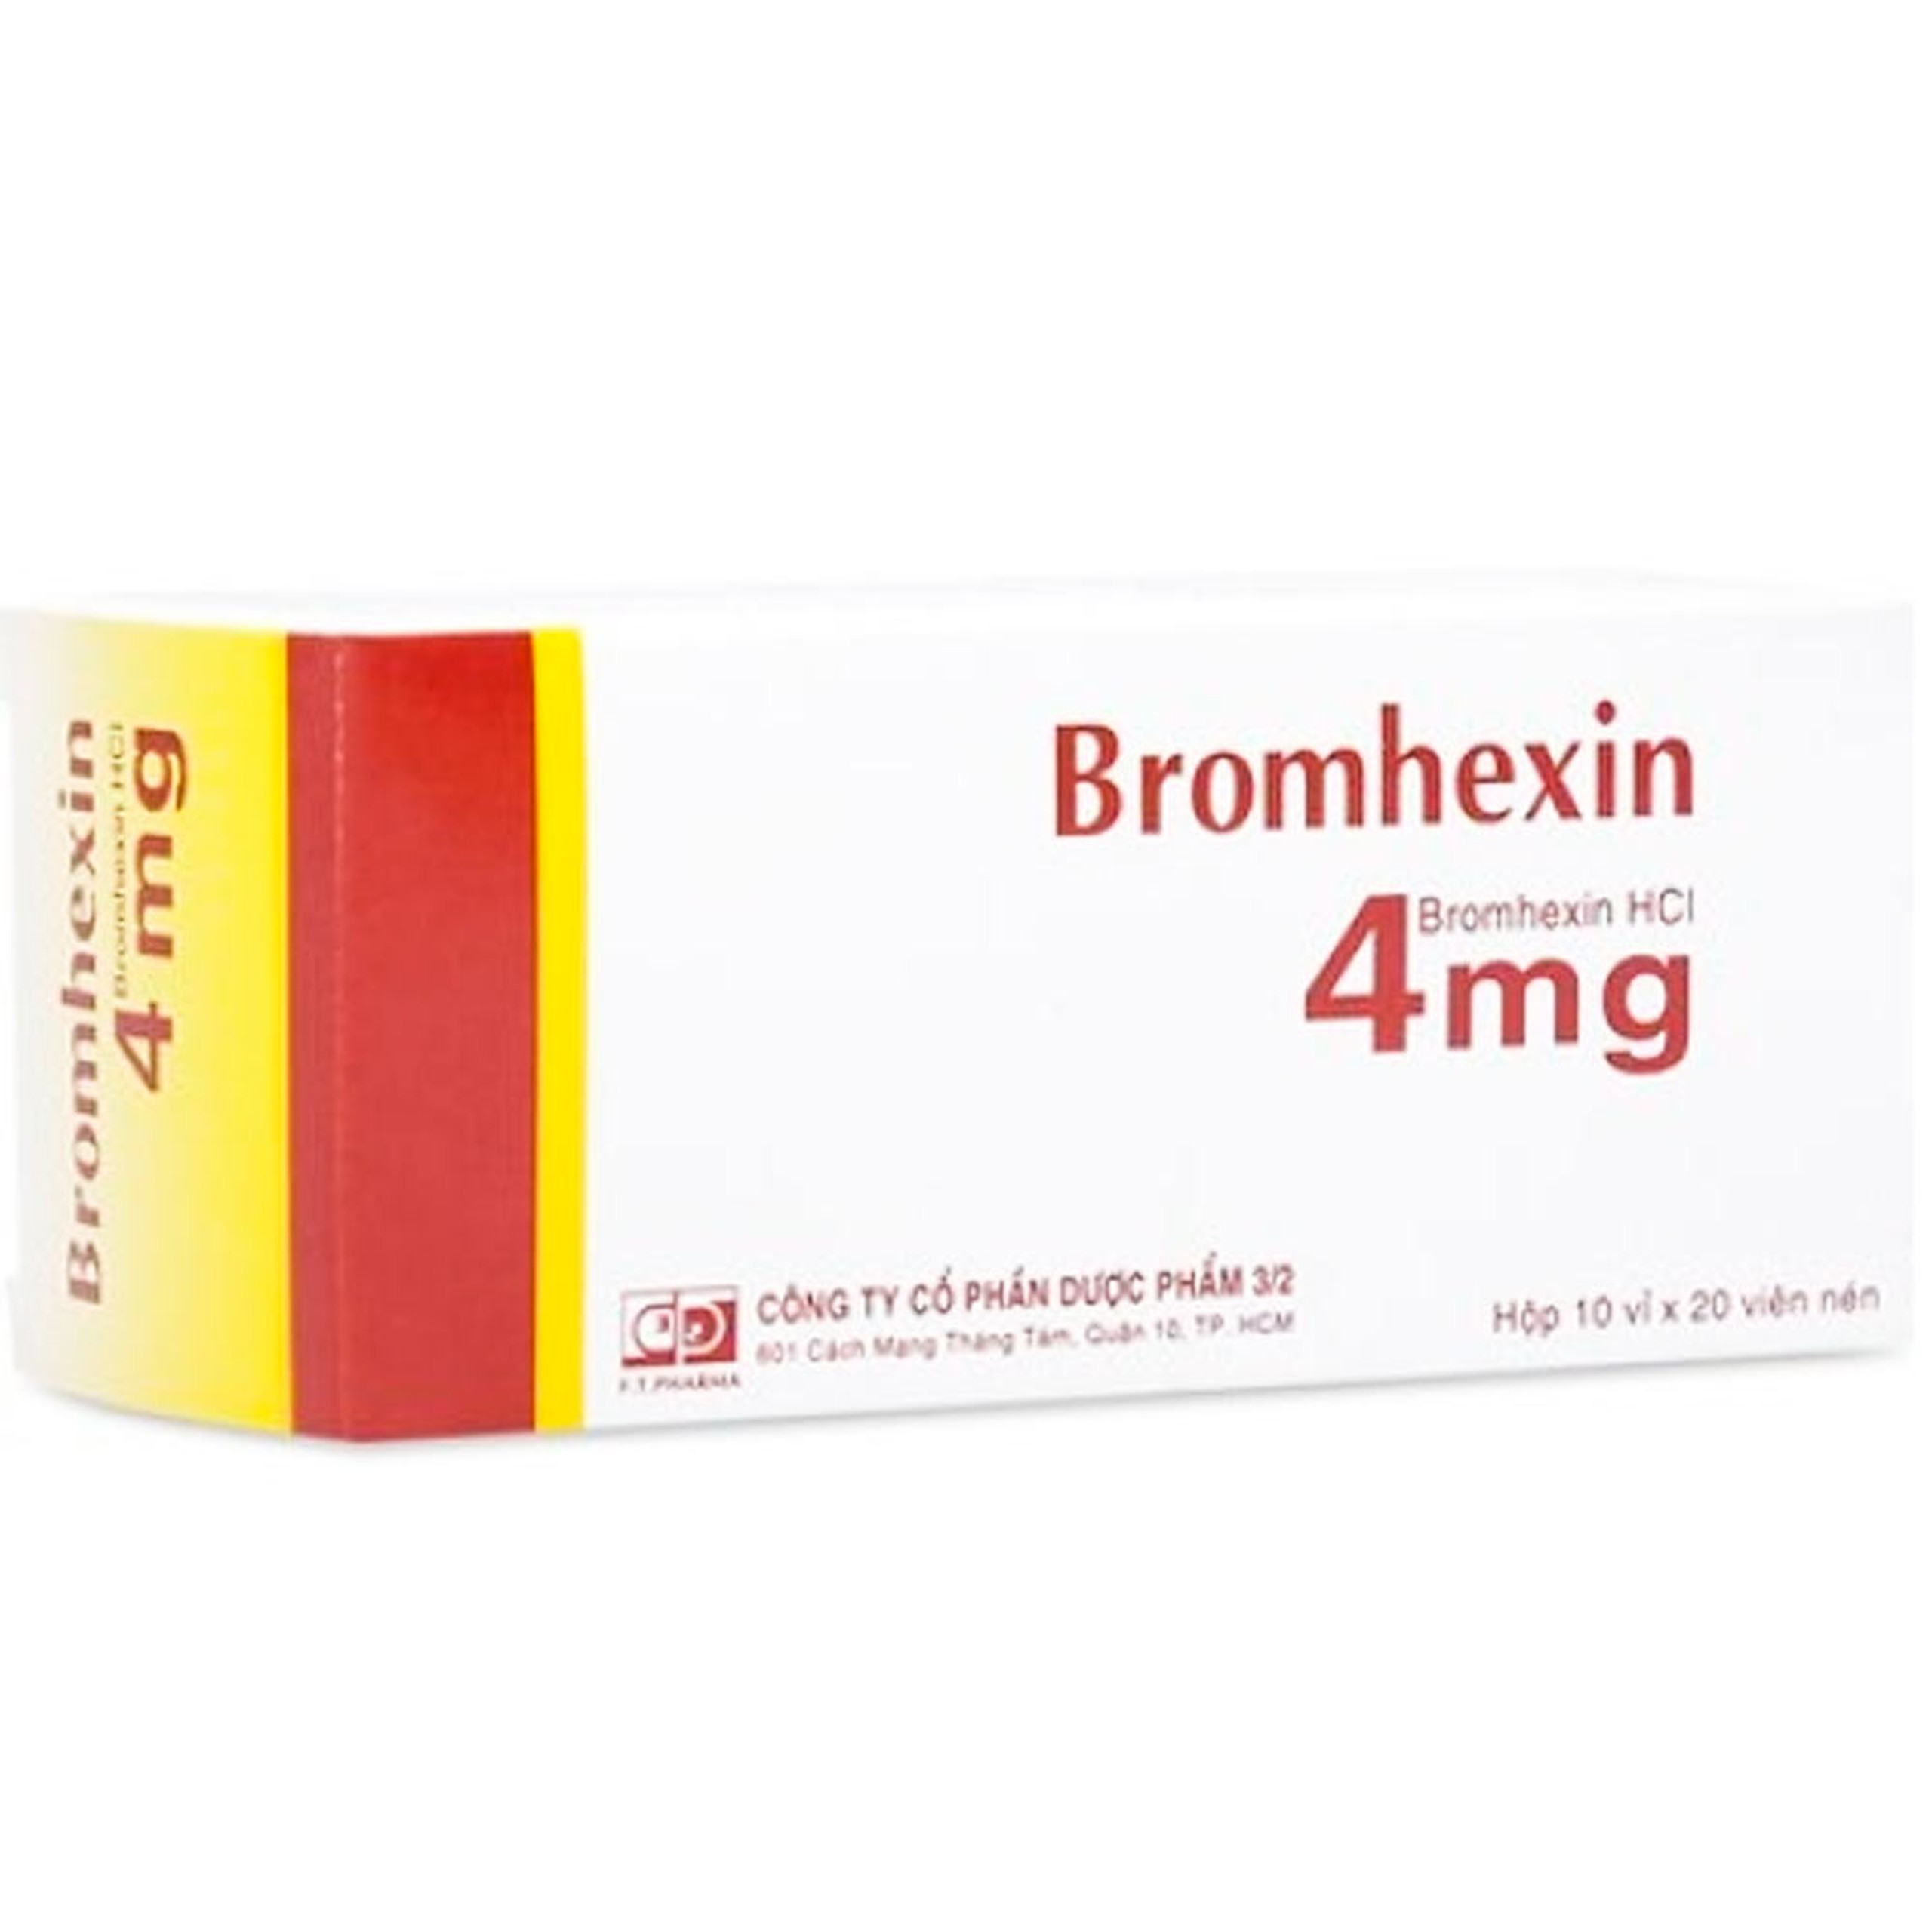 Thuốc Bromhexin 4mg Dược 3-2 tan đàm trong viêm khí phế quản, viêm phế quản mạn tính (10 vỉ x 20 viên)